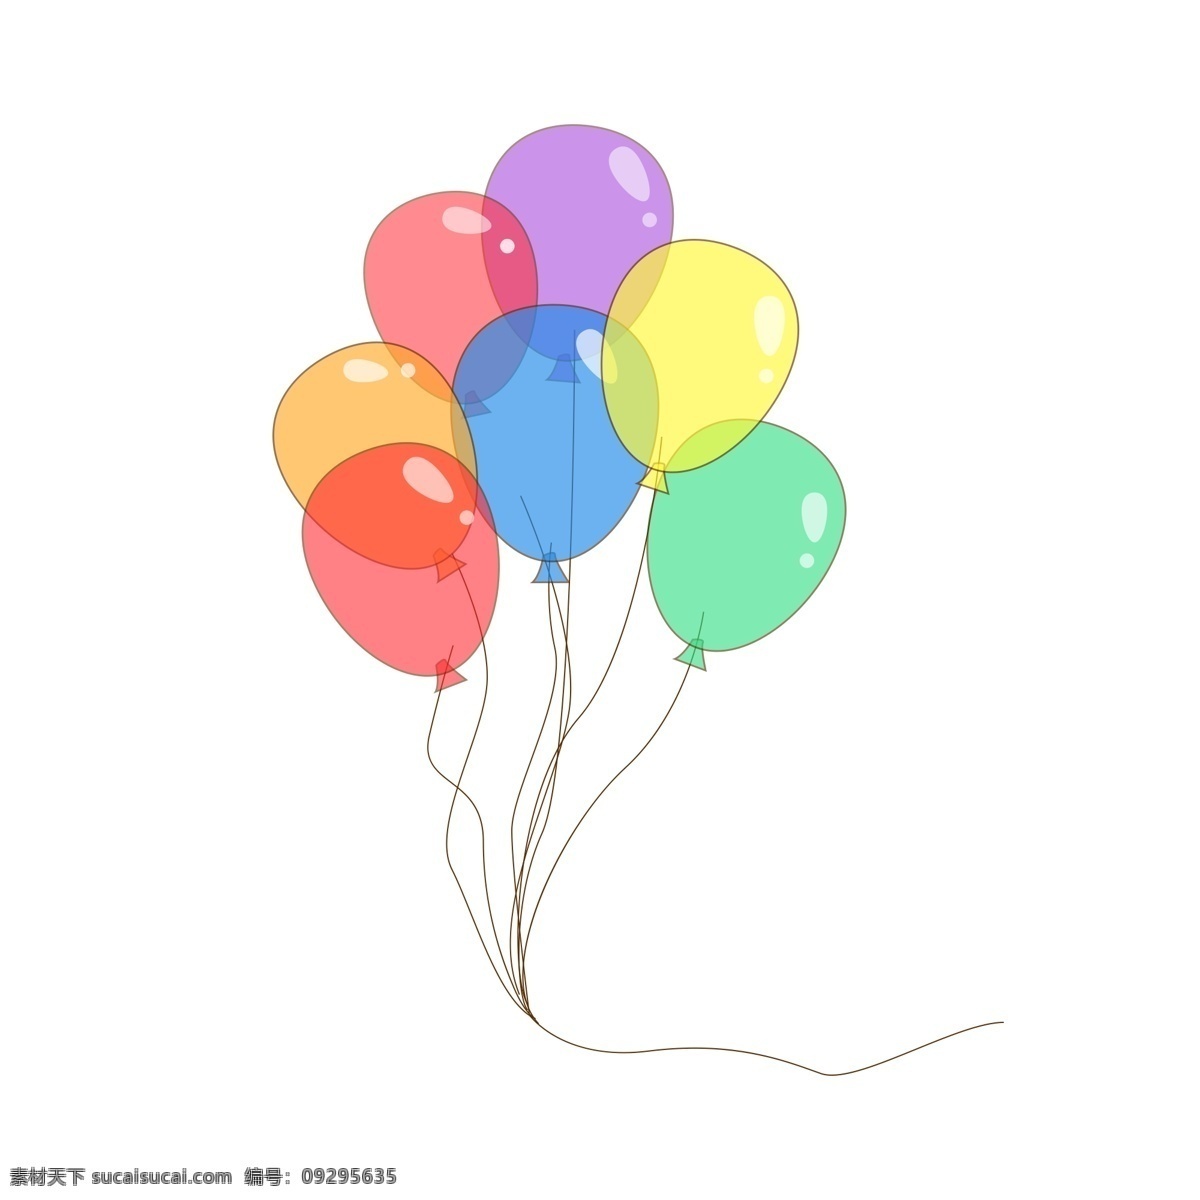 原创 手绘 可爱 彩色 透明 气球 商用 元素 卡通 设计元素 可商用